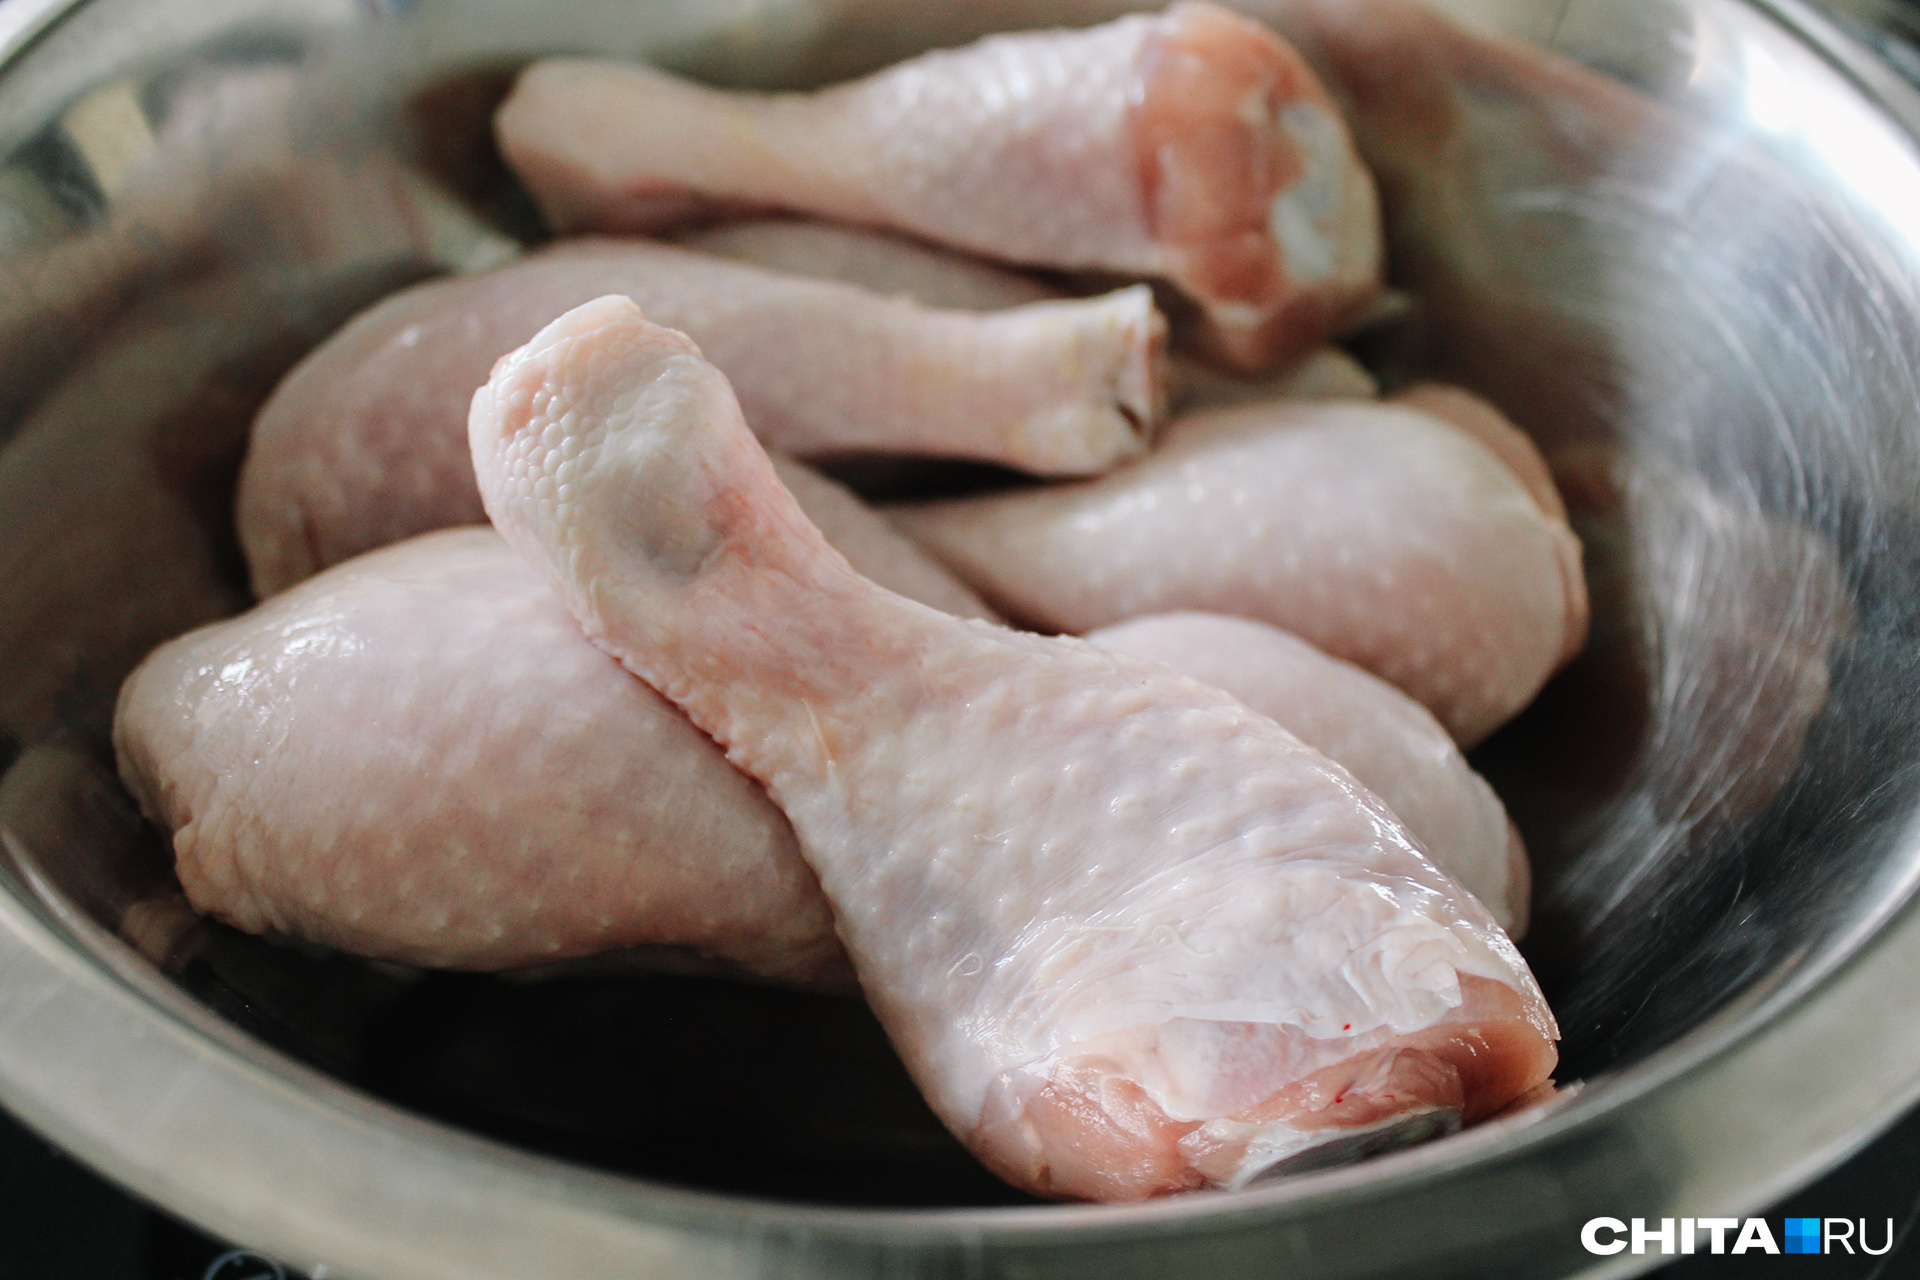 Жительница Читы жалуется за запах хлорки от курятины в супермаркете